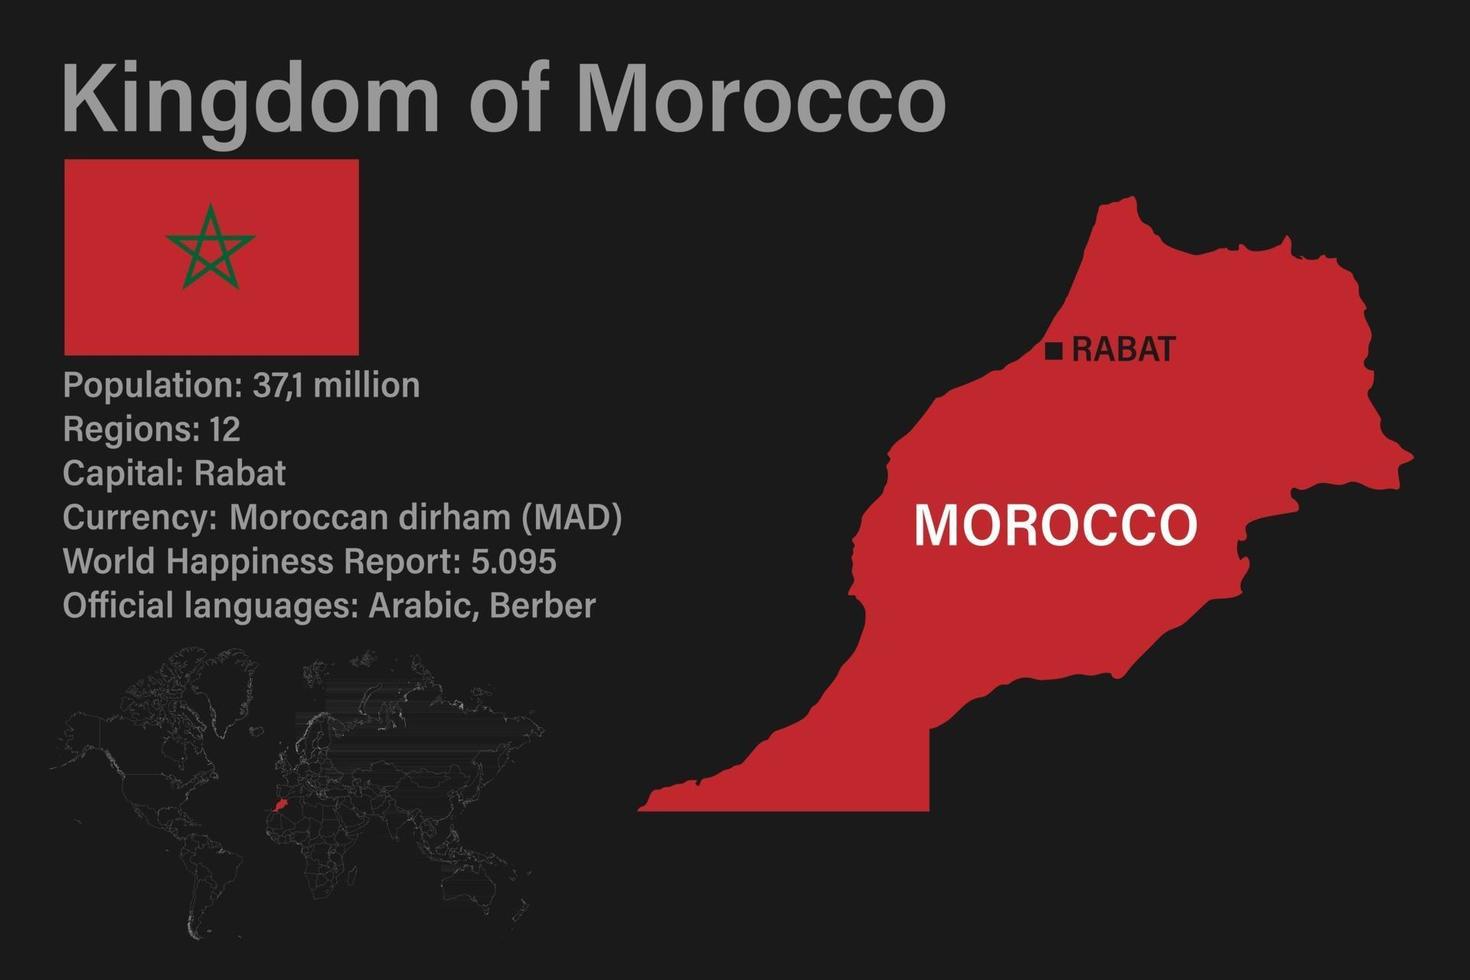 mycket detaljerad marockansk karta med flagga, huvudstad och liten världskarta vektor